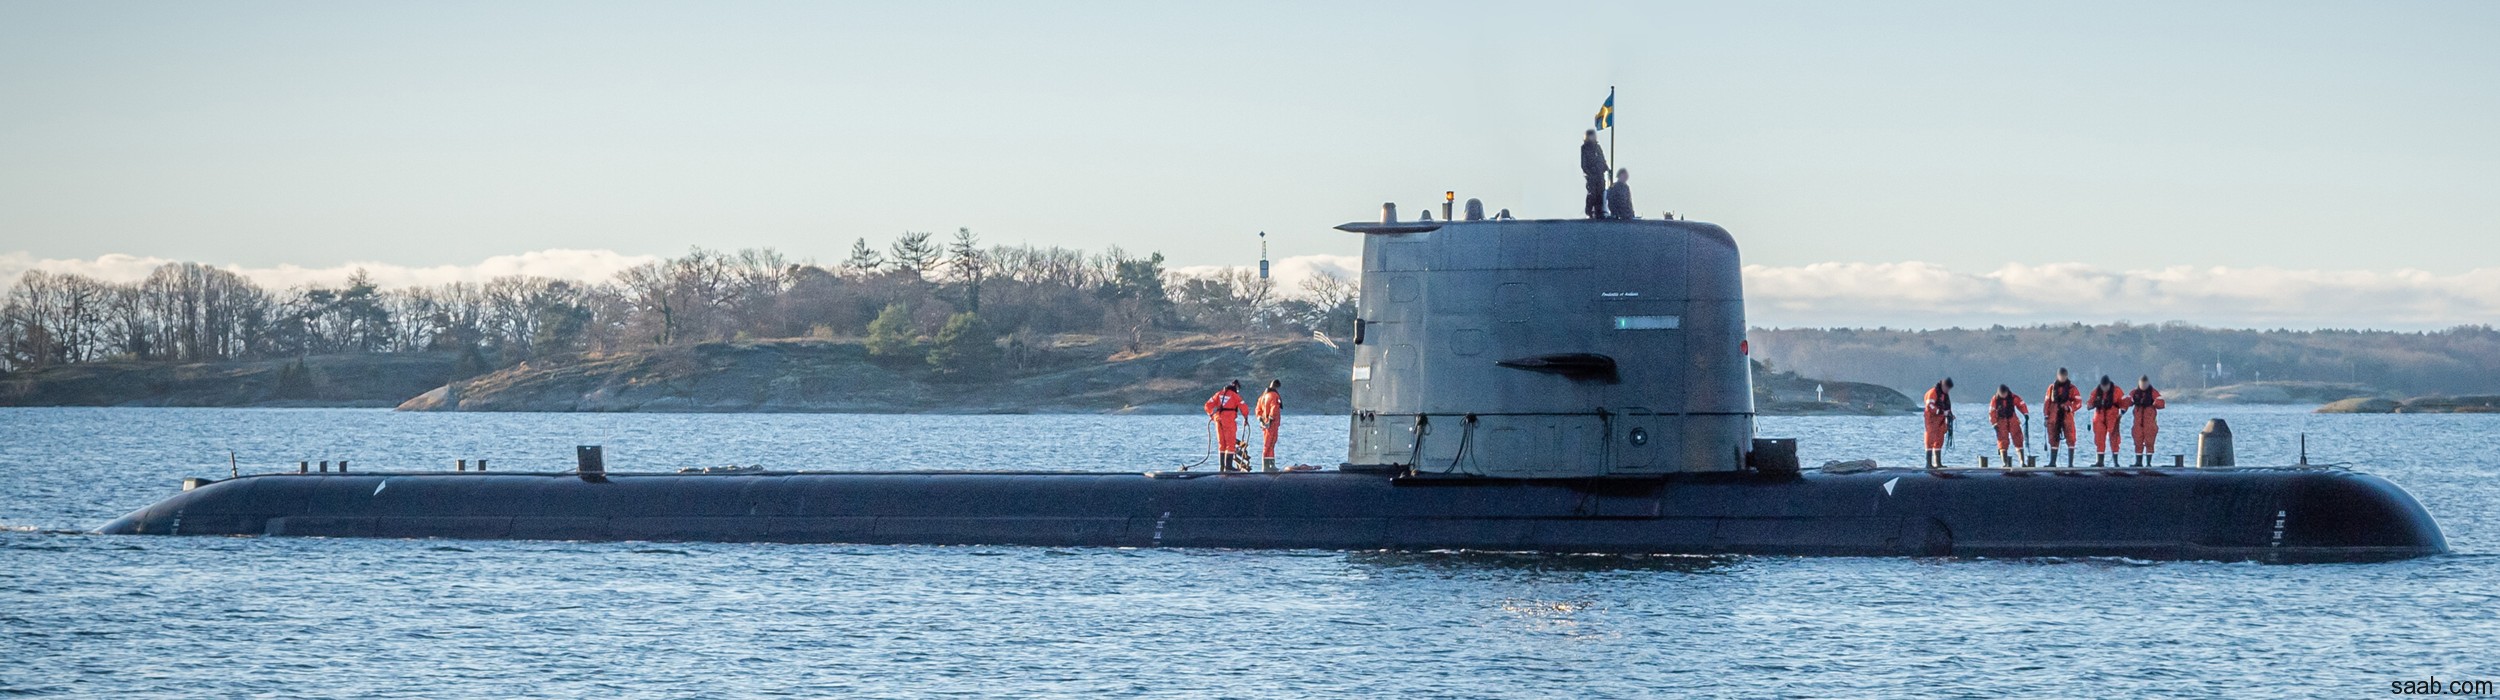 hswms hms uppland upd gotland class submarine ssk swedish navy svenska marinen försvarsmakten kockums 02